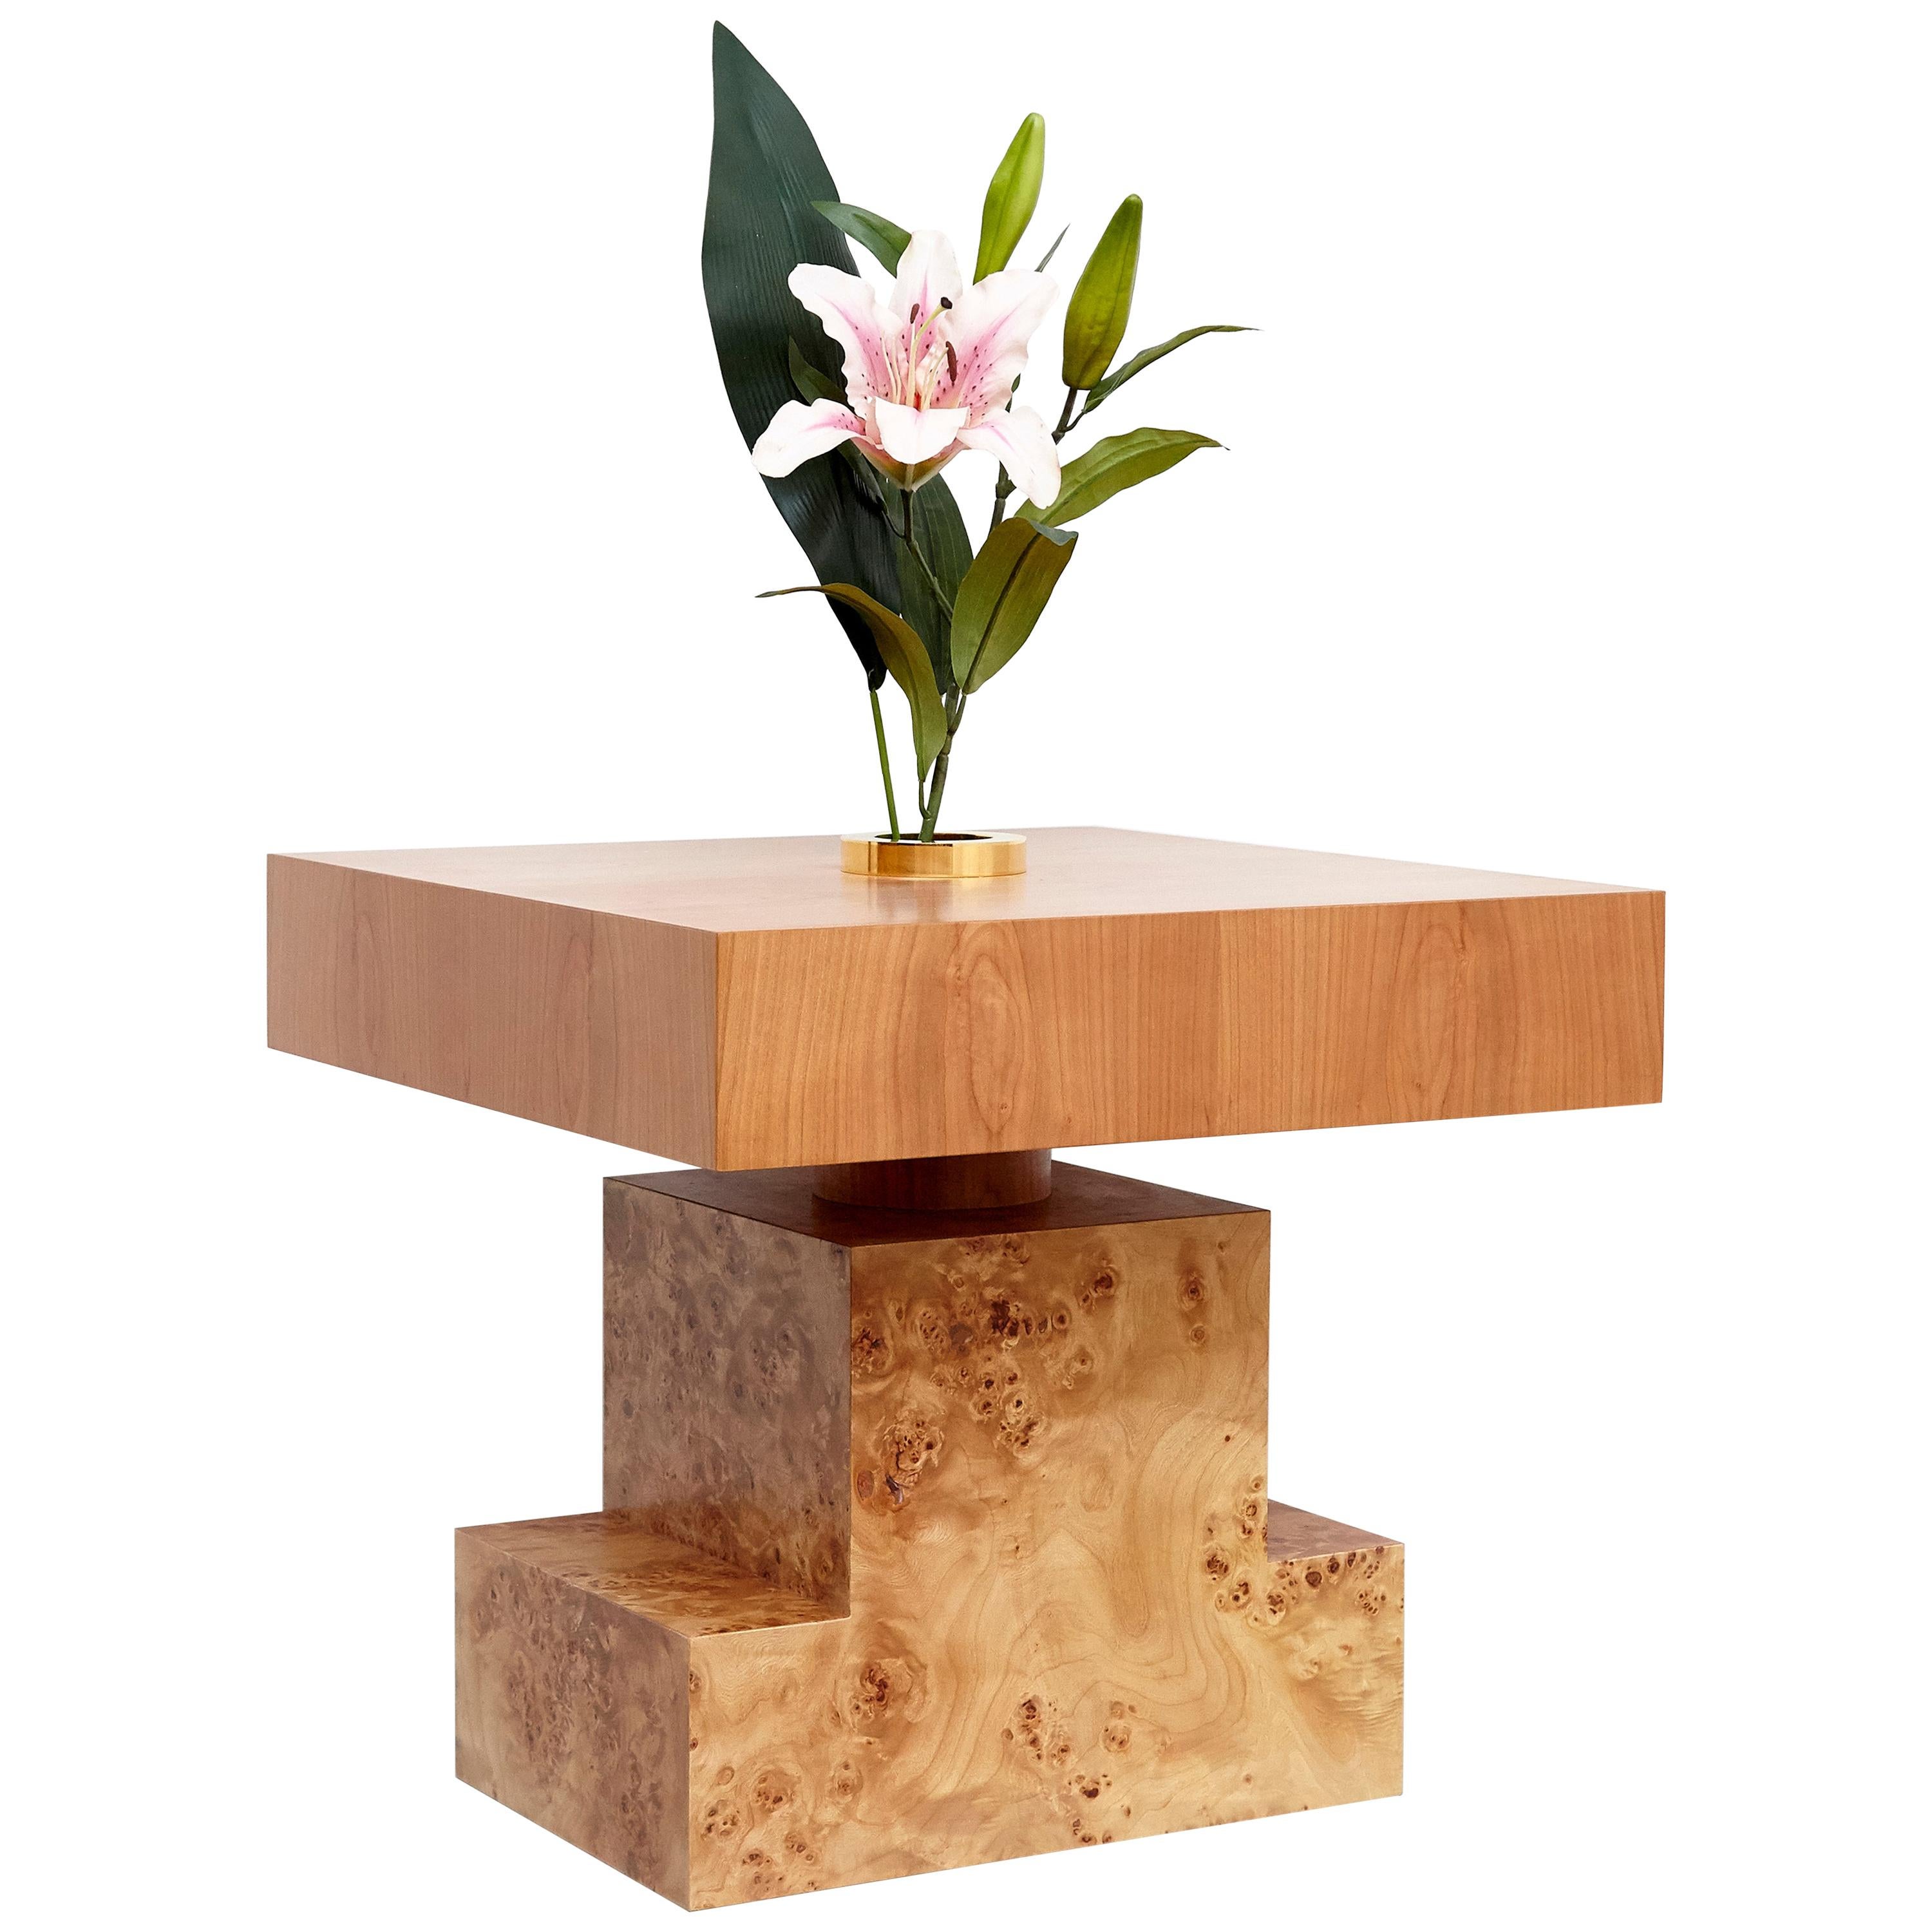 Modern Ettore Sottsass Flower Vase C for Twenty-Seven Woods for an Artificial Flower